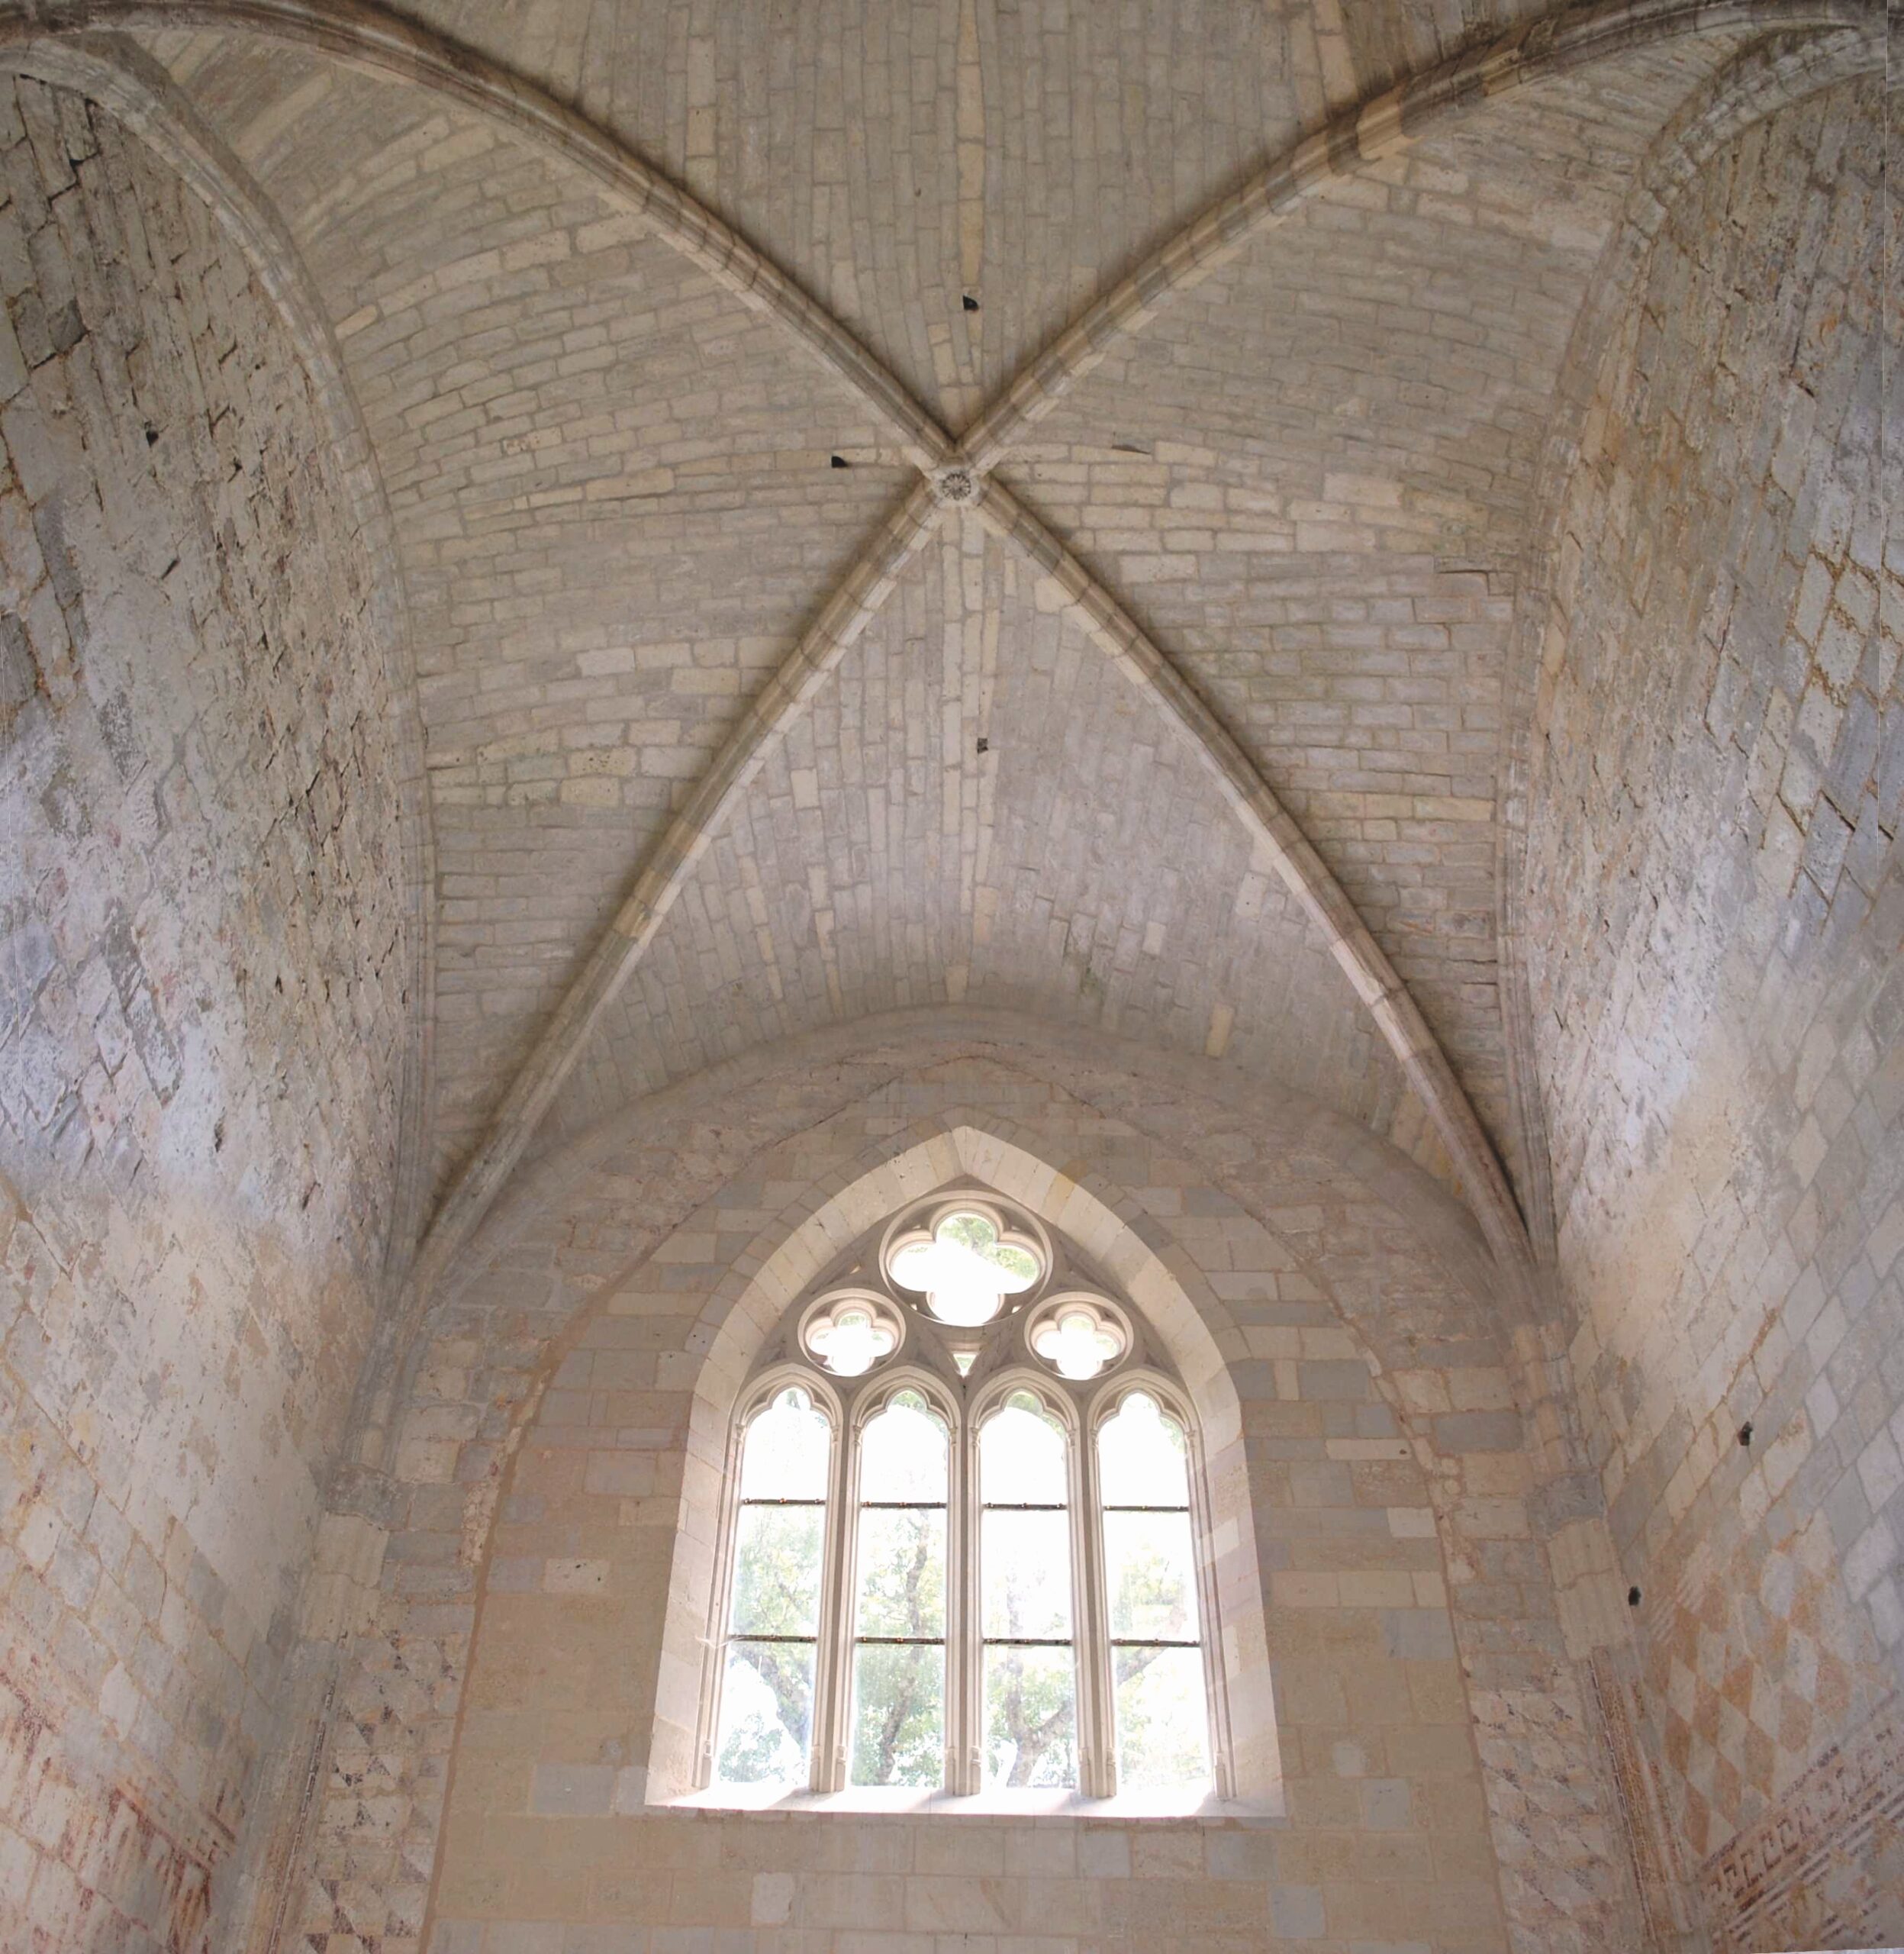 Vue de la voûte sur croisée d’ogives du chœur de l’église abbatiale de Châtres. © Ph. Birolleau